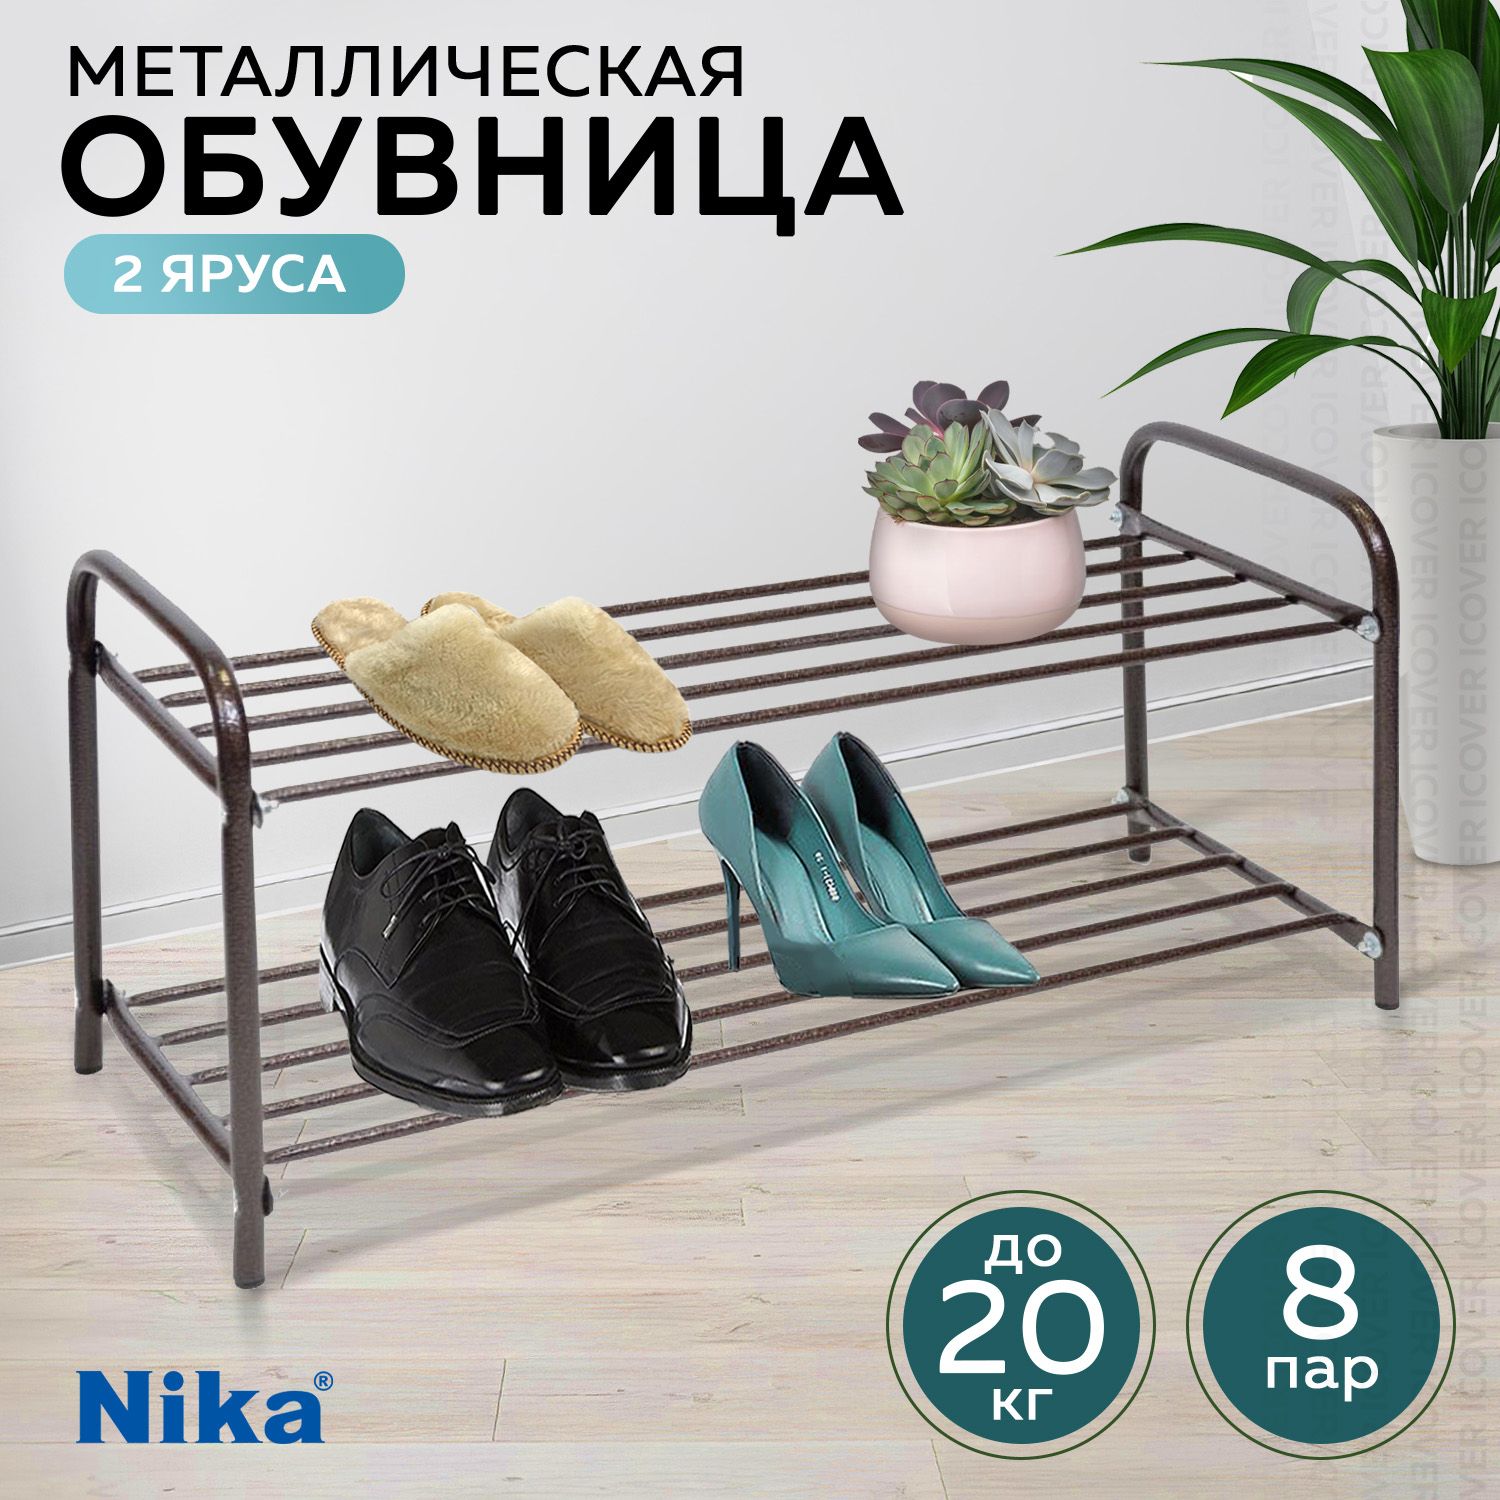 Обувница для прихожей Nika ЭТК2/A, этажерка для обуви, банкетка в прихожую, полка для обуви, металлическая, коричневая, 79х36х33см